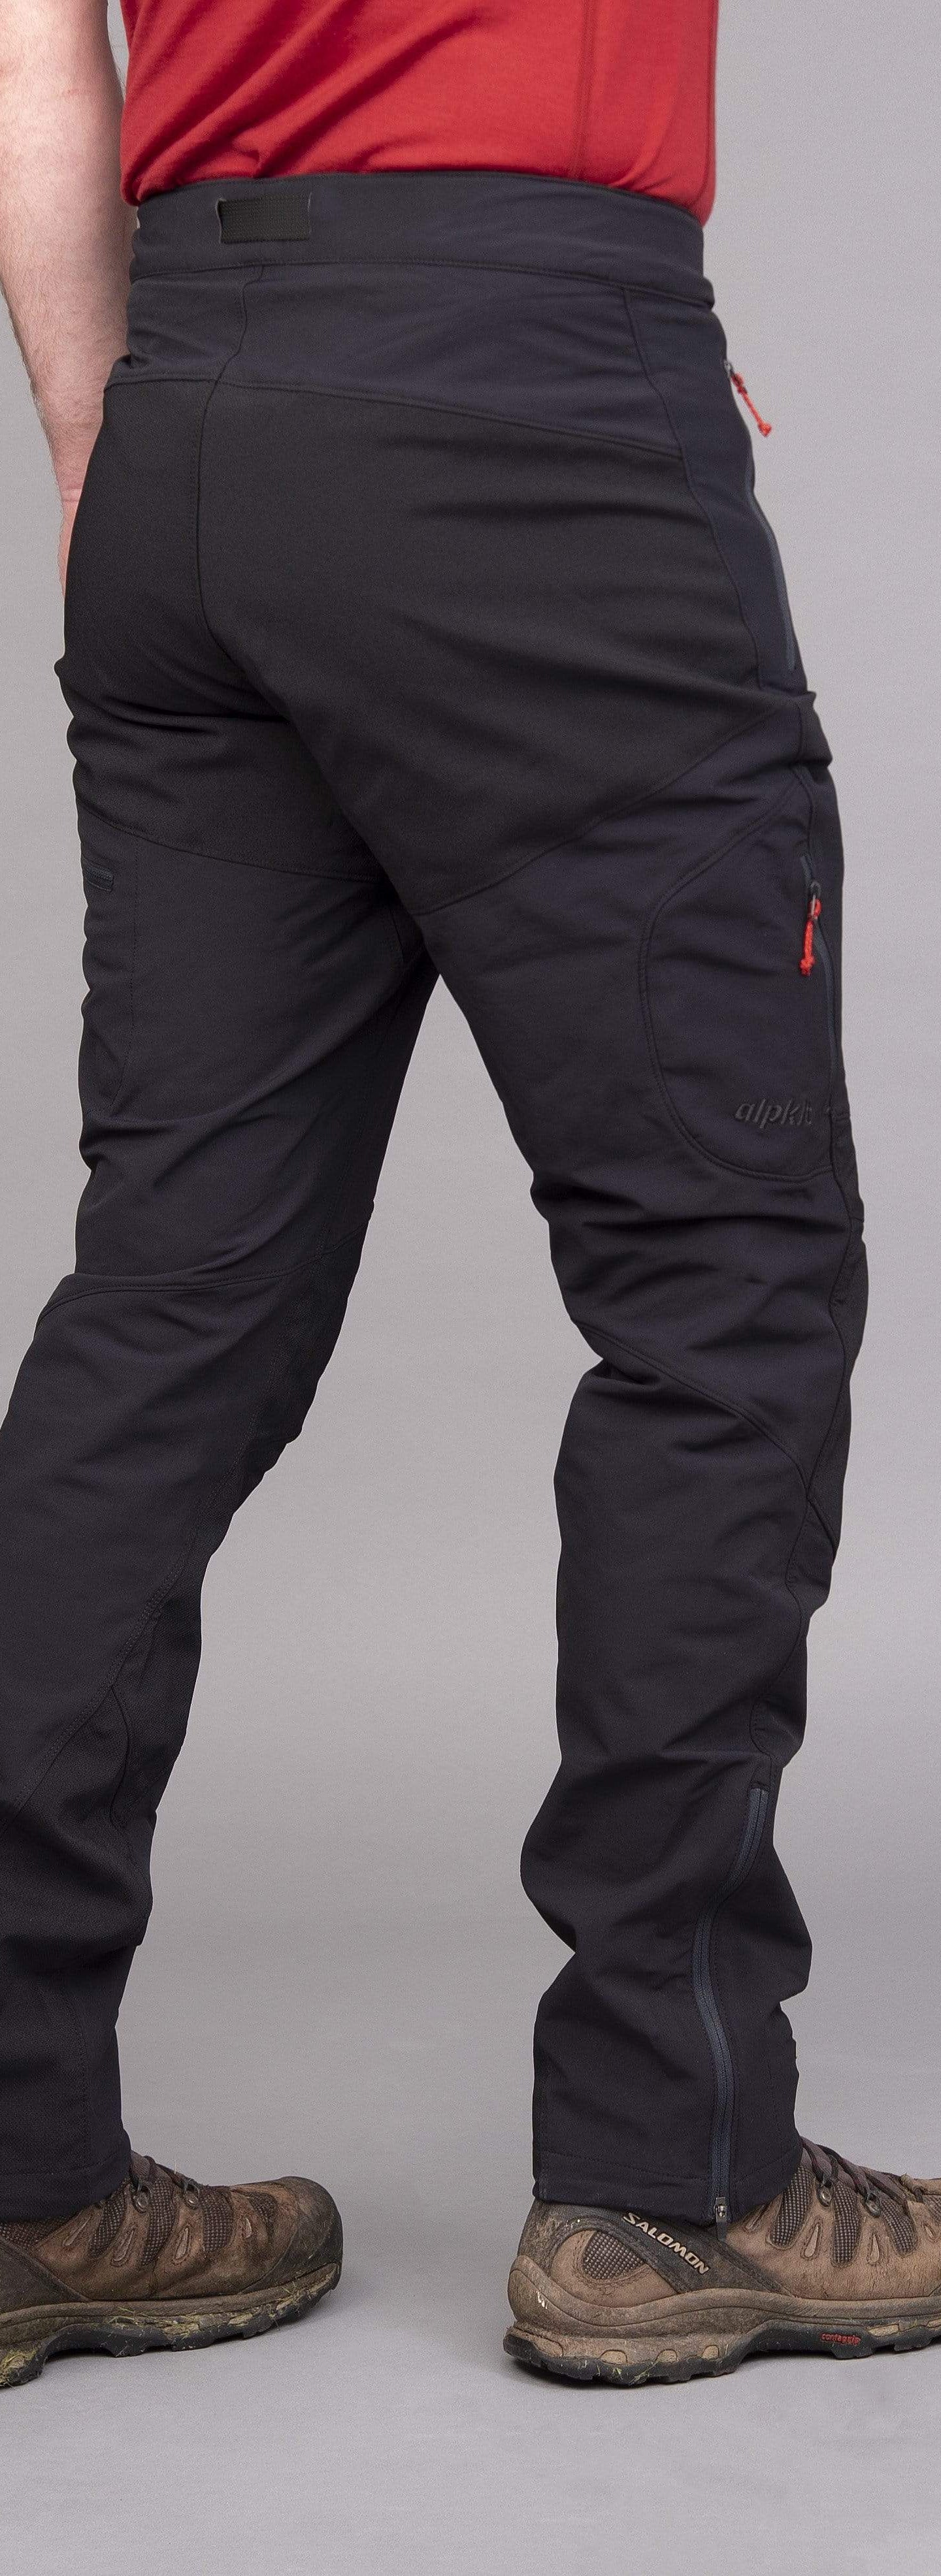 Buy wholesale KENROD Men's Camouflage Pants, Men's Trekking Pants, Men's  Mountain Pants, Men's Winter Trekking Pants